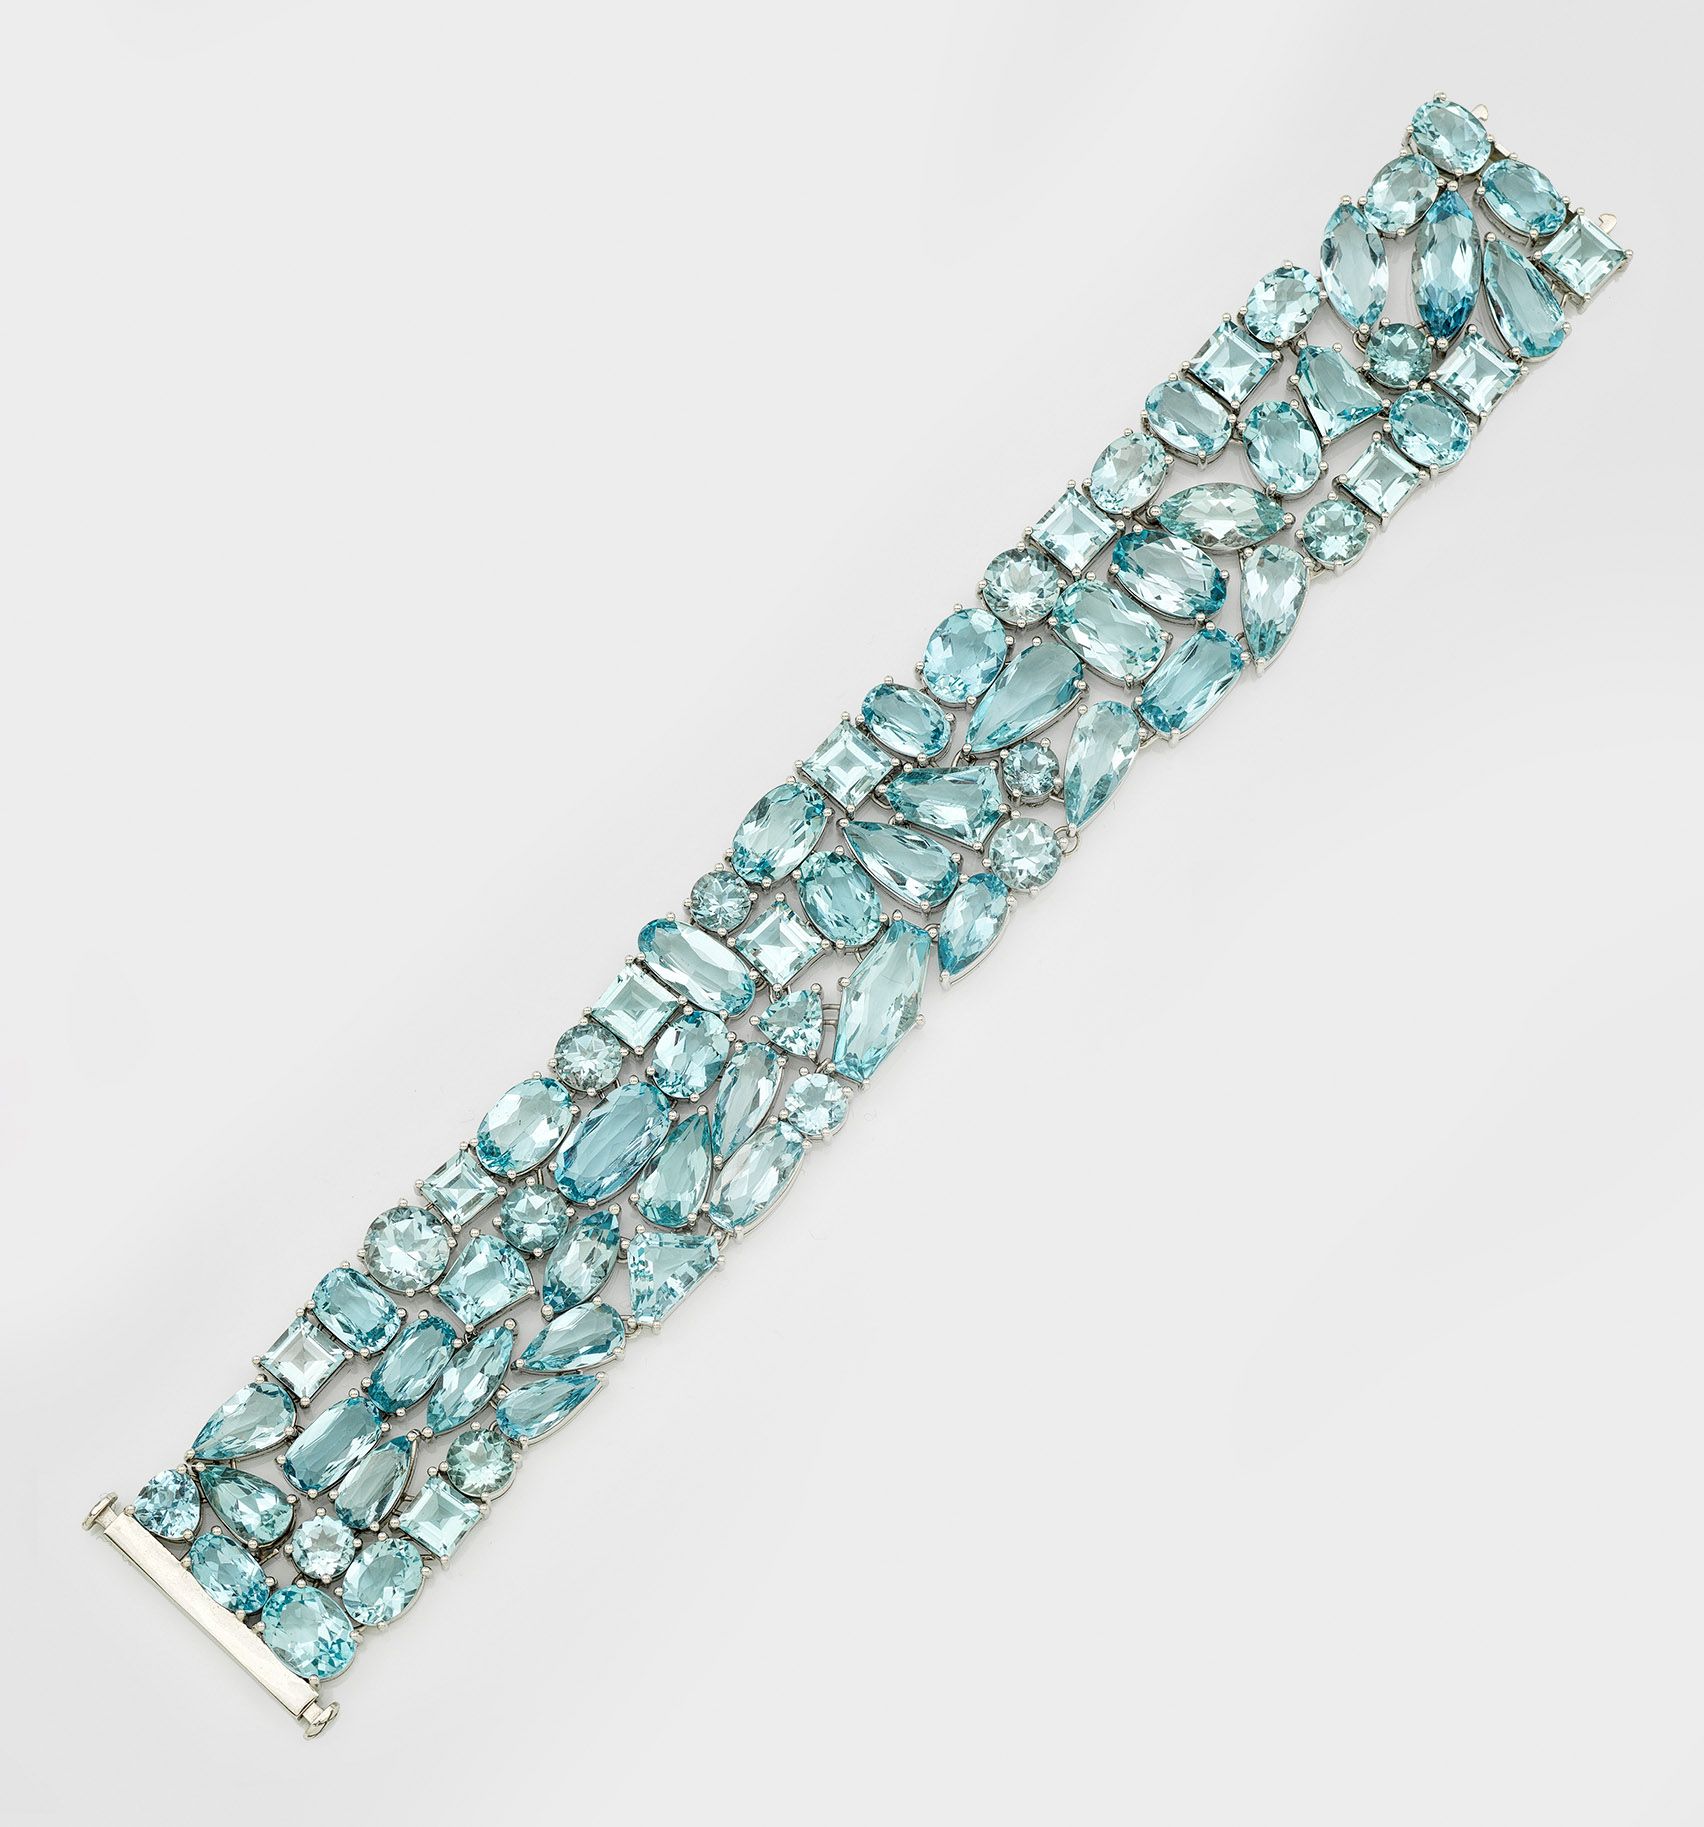 Null 白金镶海蓝宝石手镯，哑光，750 年制造，镶嵌天蓝色海蓝宝石，共计约 92 克拉，有垂坠、六角、椭圆和车工切割。重量约 62.24 克。
18K 白金&hellip;